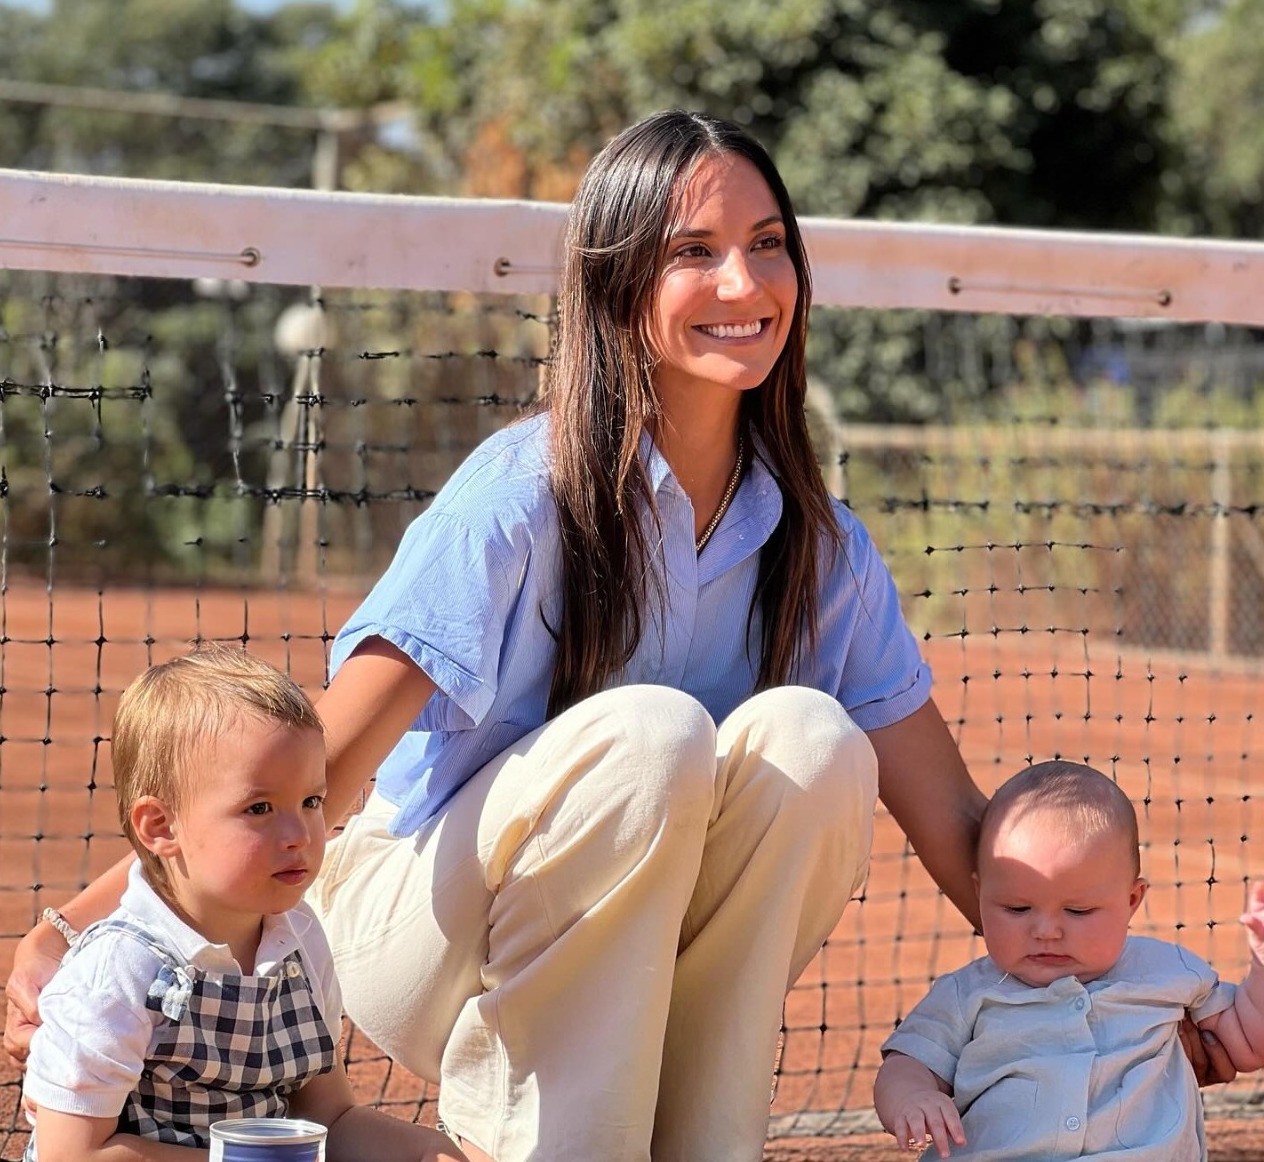 Laura Urruticoechea, esposa de Nico Jarry, revela cómo llevan su vida “en tour” con niños